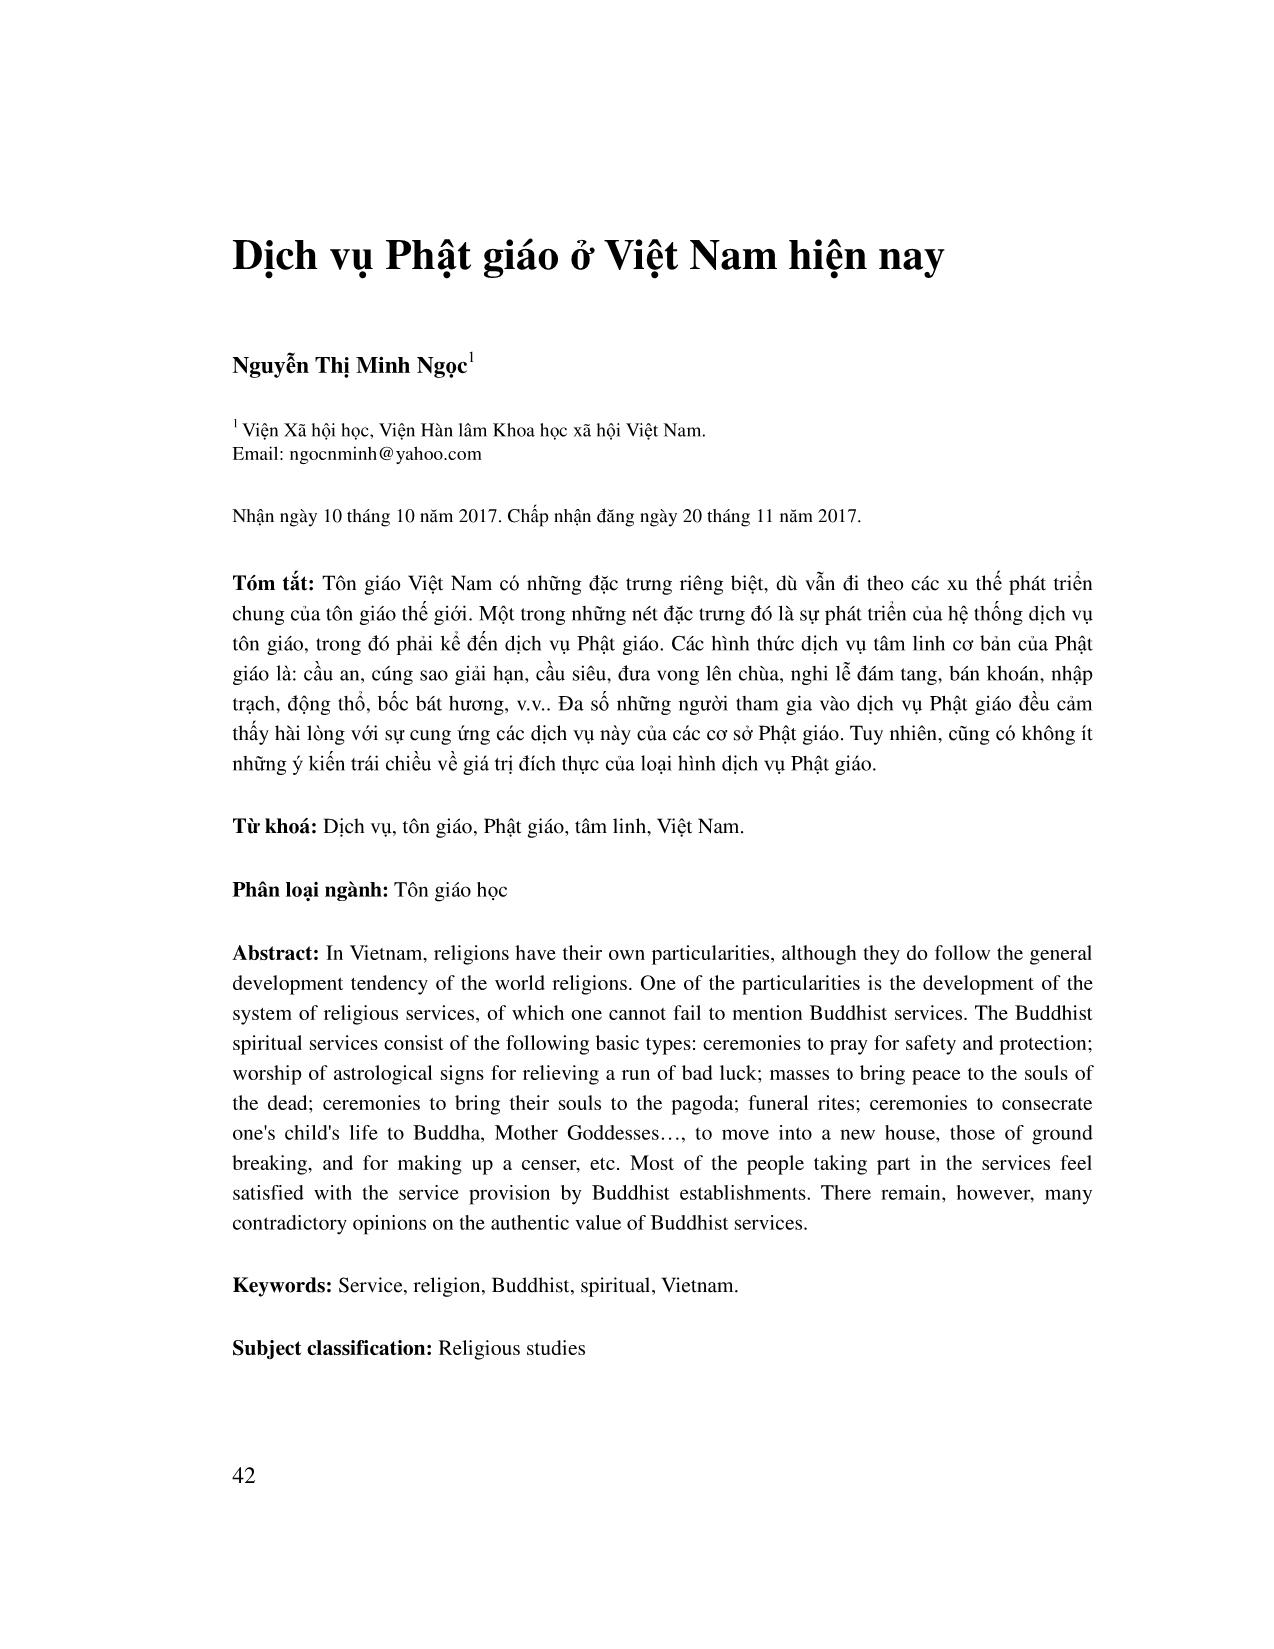 Dịch vụ Phật giáo ở Việt Nam hiện nay trang 1